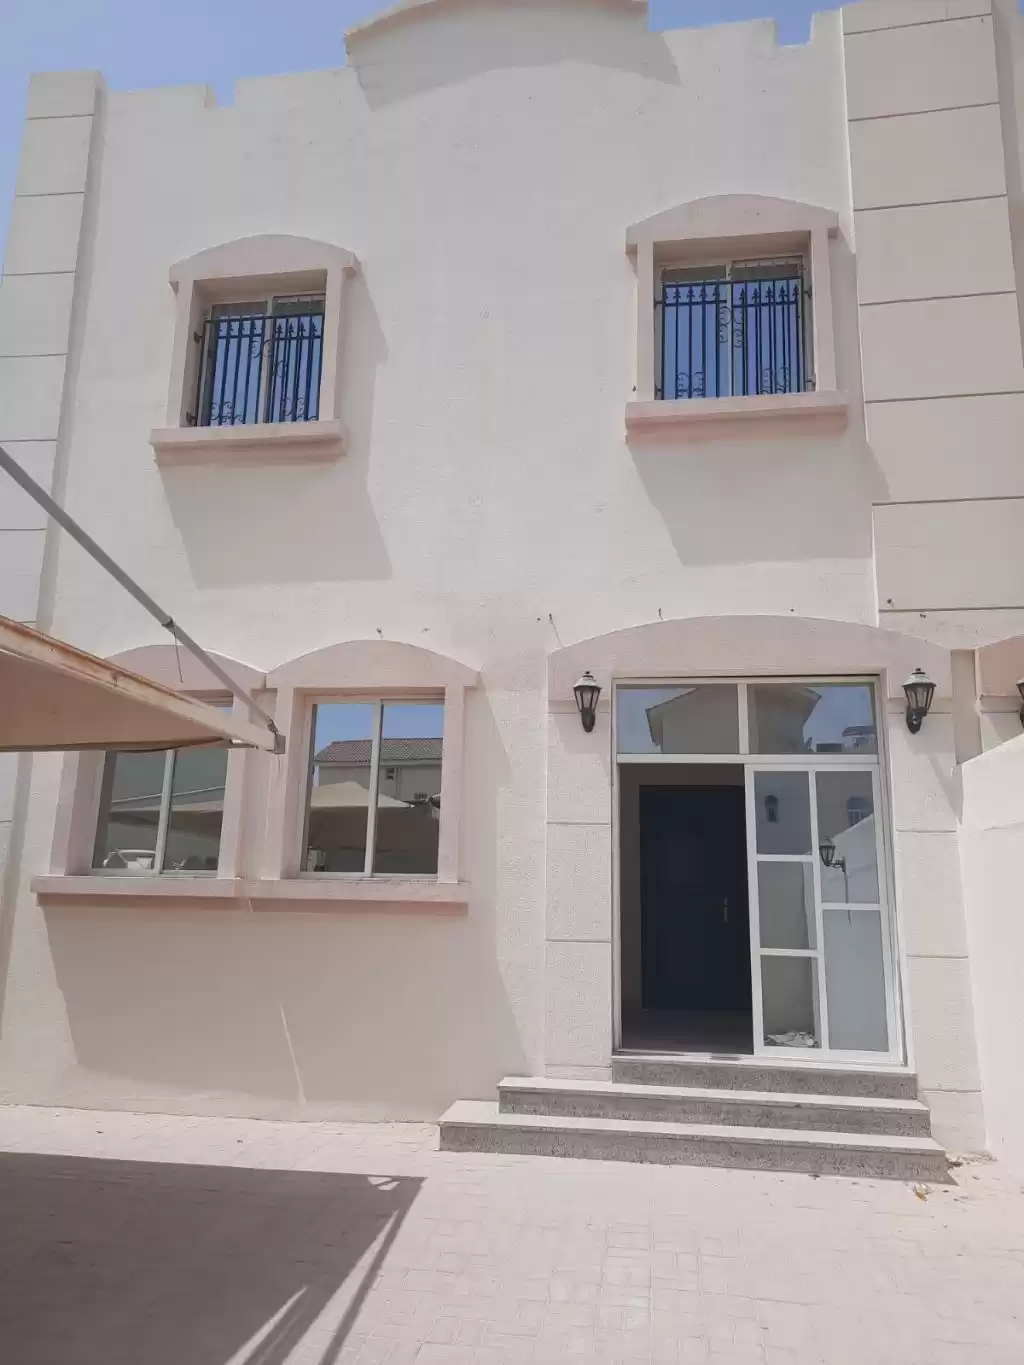 Résidentiel Propriété prête 3 chambres U / f Villa autonome  a louer au Al-Sadd , Doha #13390 - 1  image 